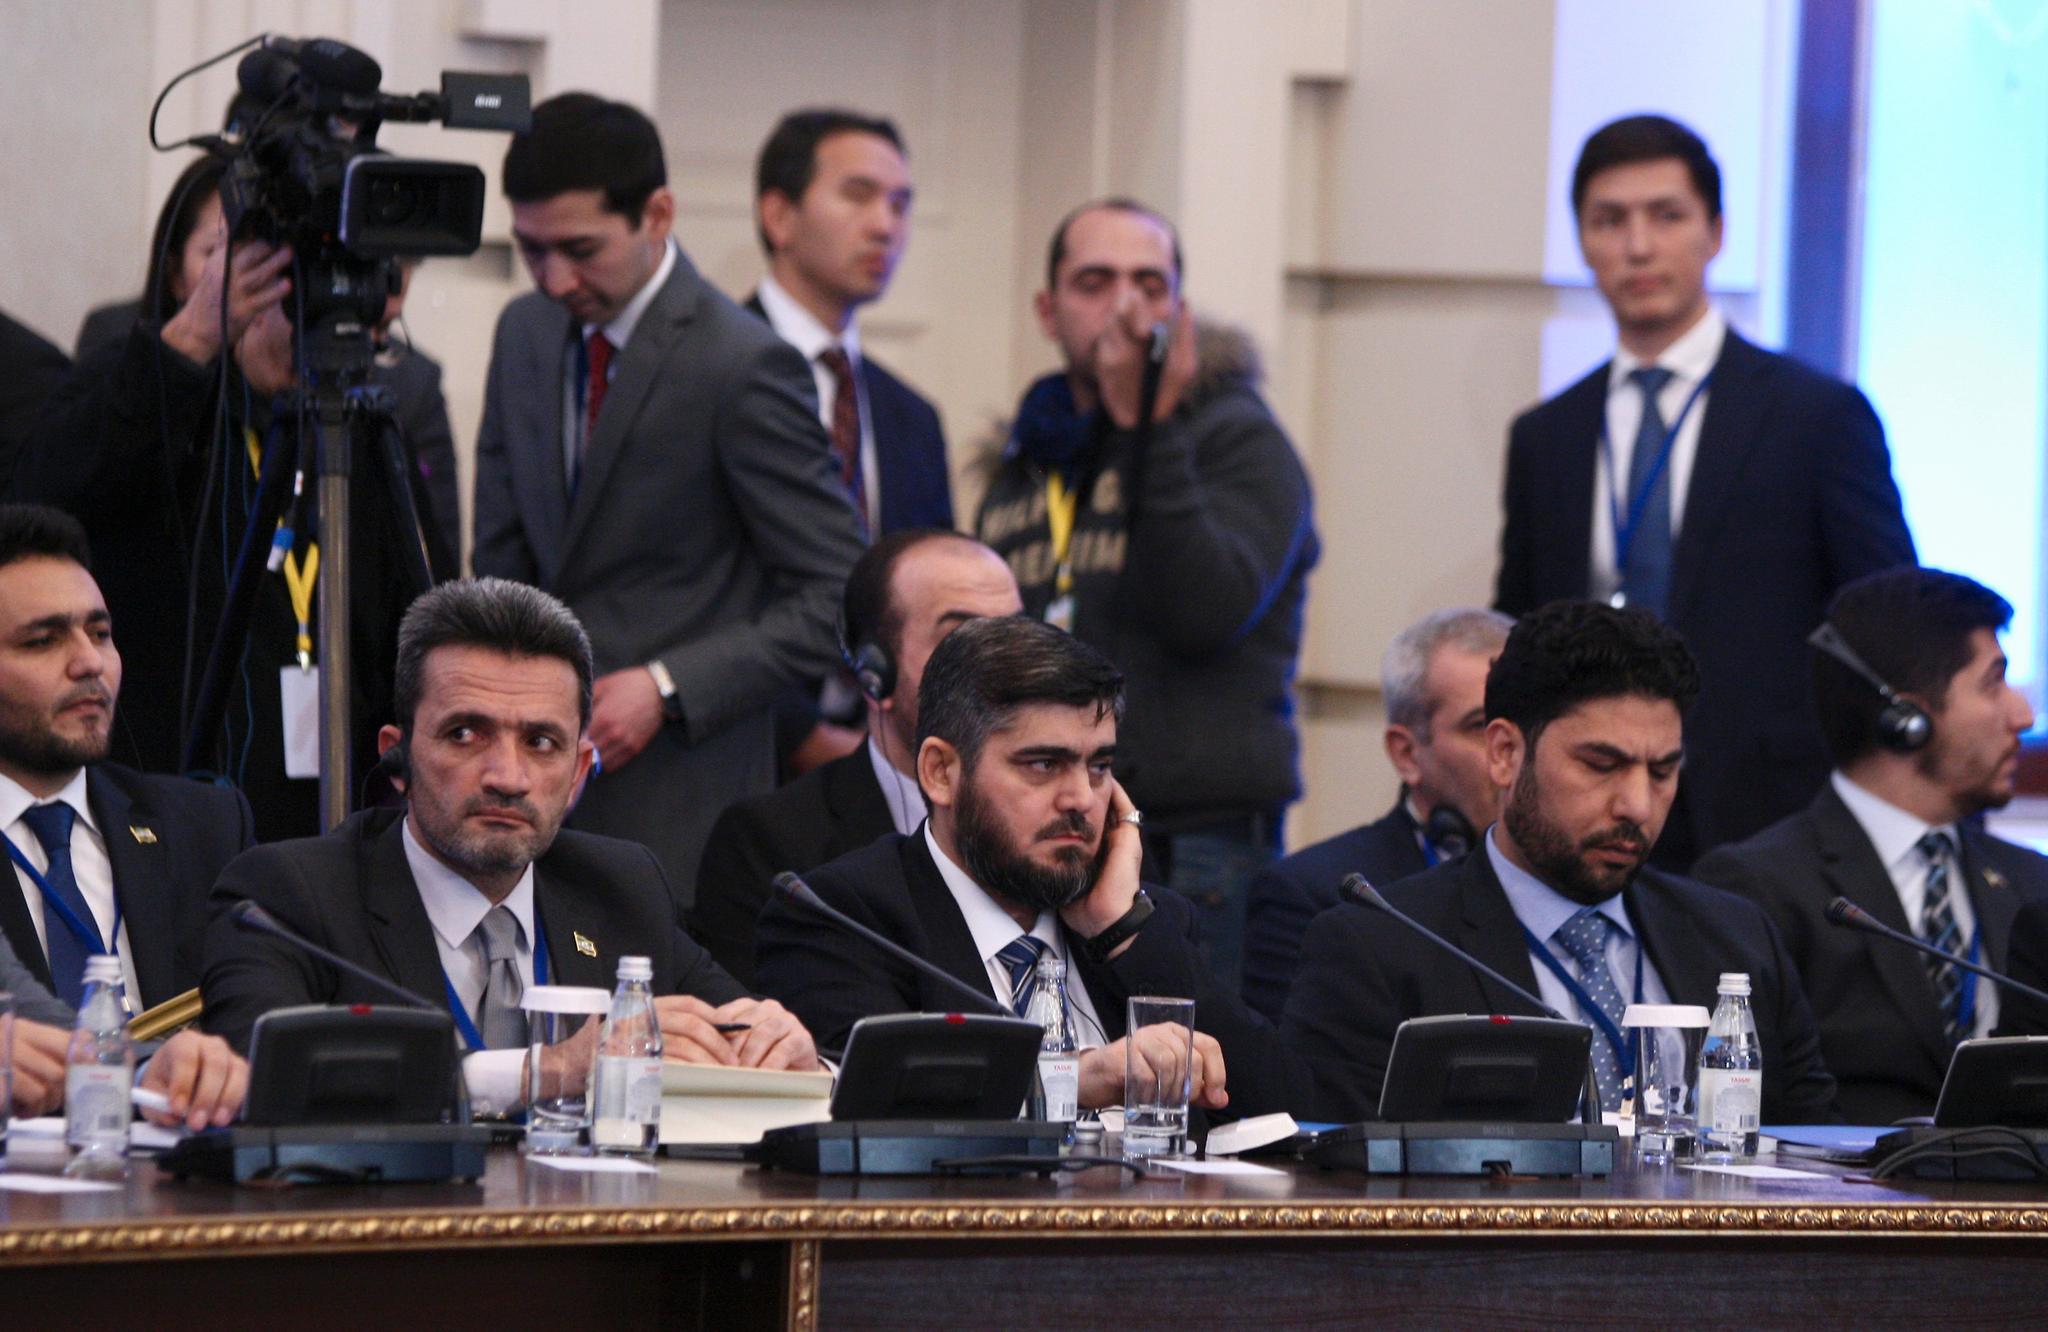 Lederen for den syriske opposisjonsdelegasjonen Mohammad Alloush (i midten) under fredssamtalene om Syria i Astana i Kasakhstan mandag 23. januar.